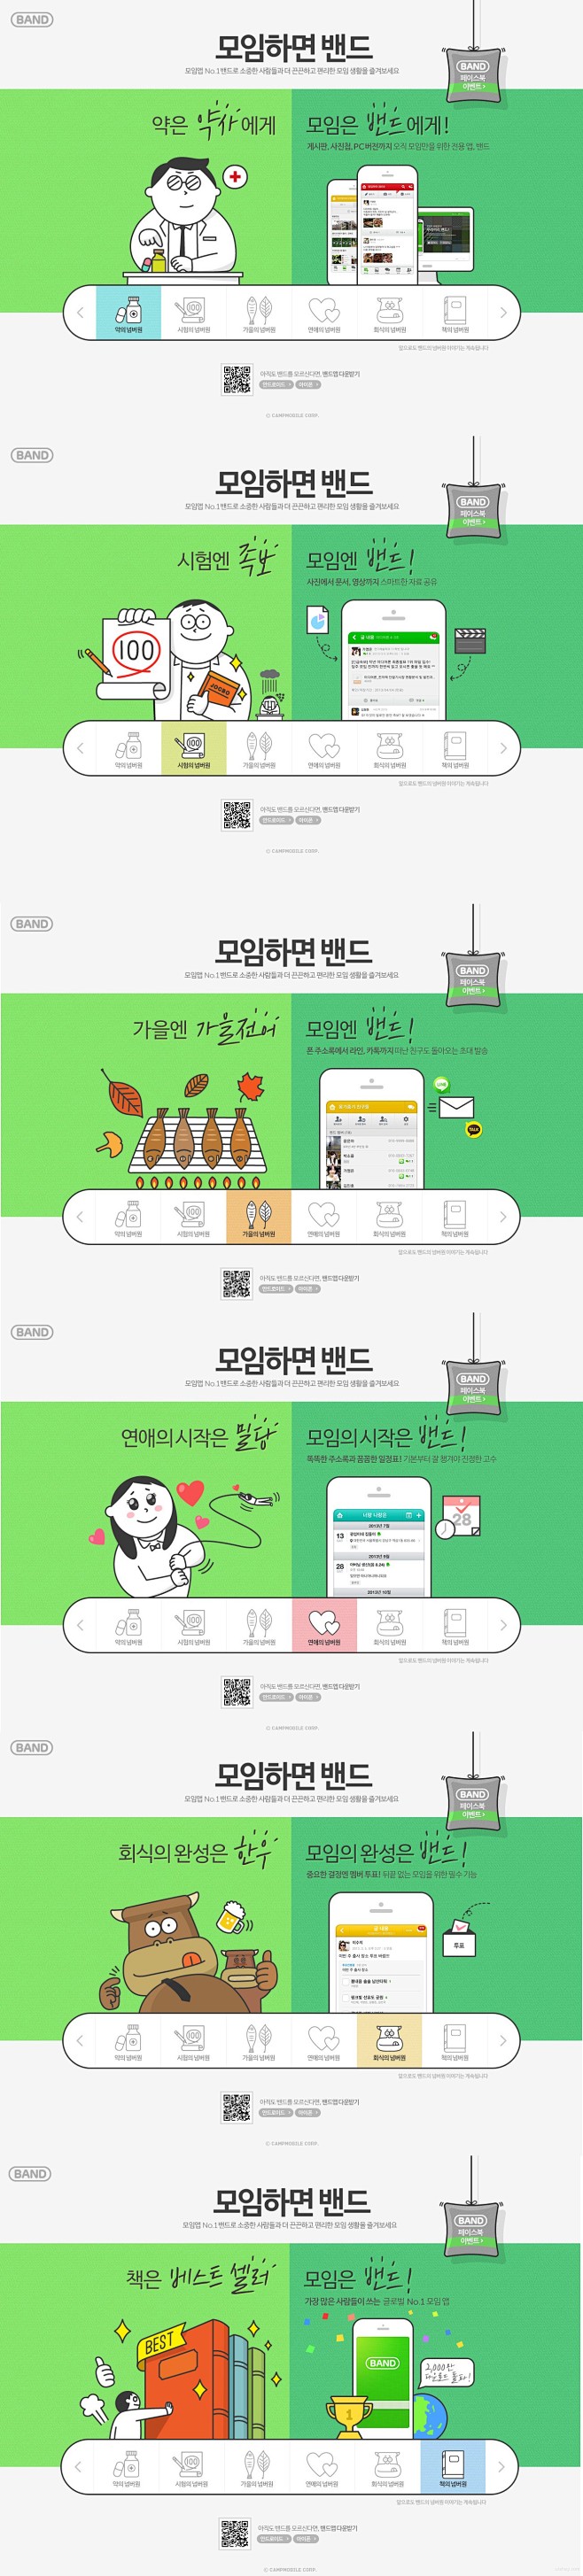 韩国网站界面设计欣赏3